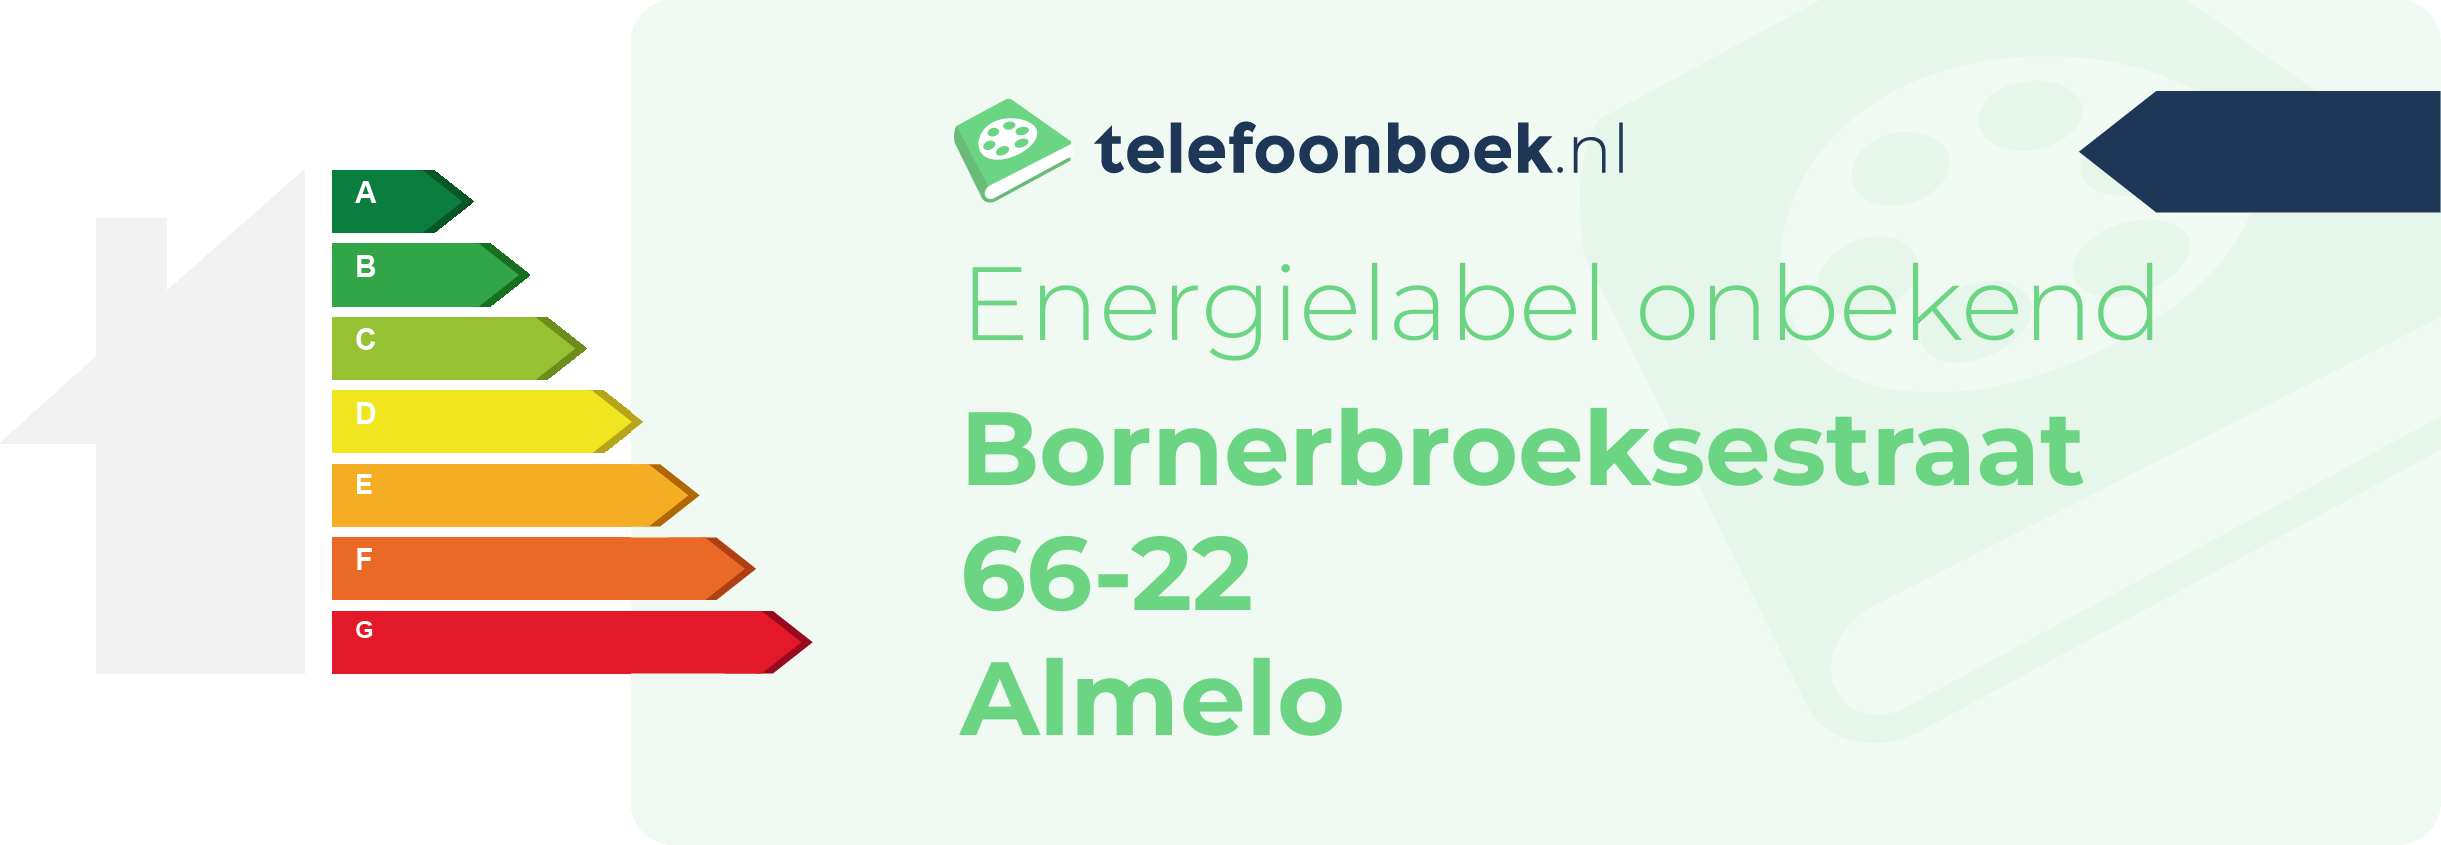 Energielabel Bornerbroeksestraat 66-22 Almelo